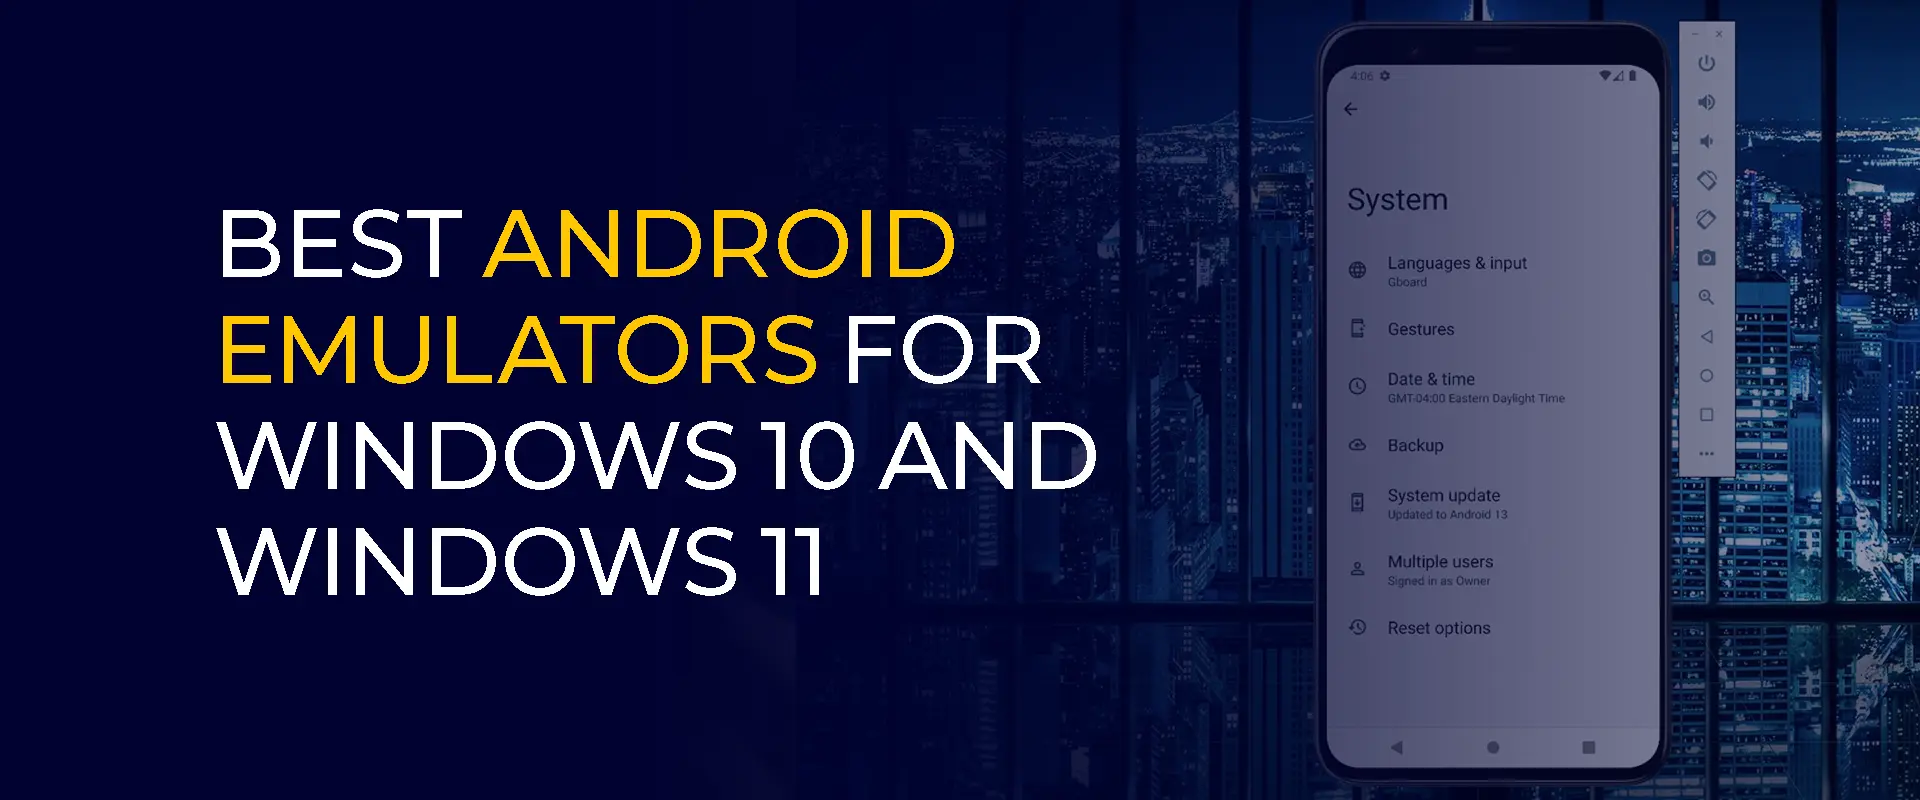 Melhores emuladores Android para Windows 10 e Windows 11